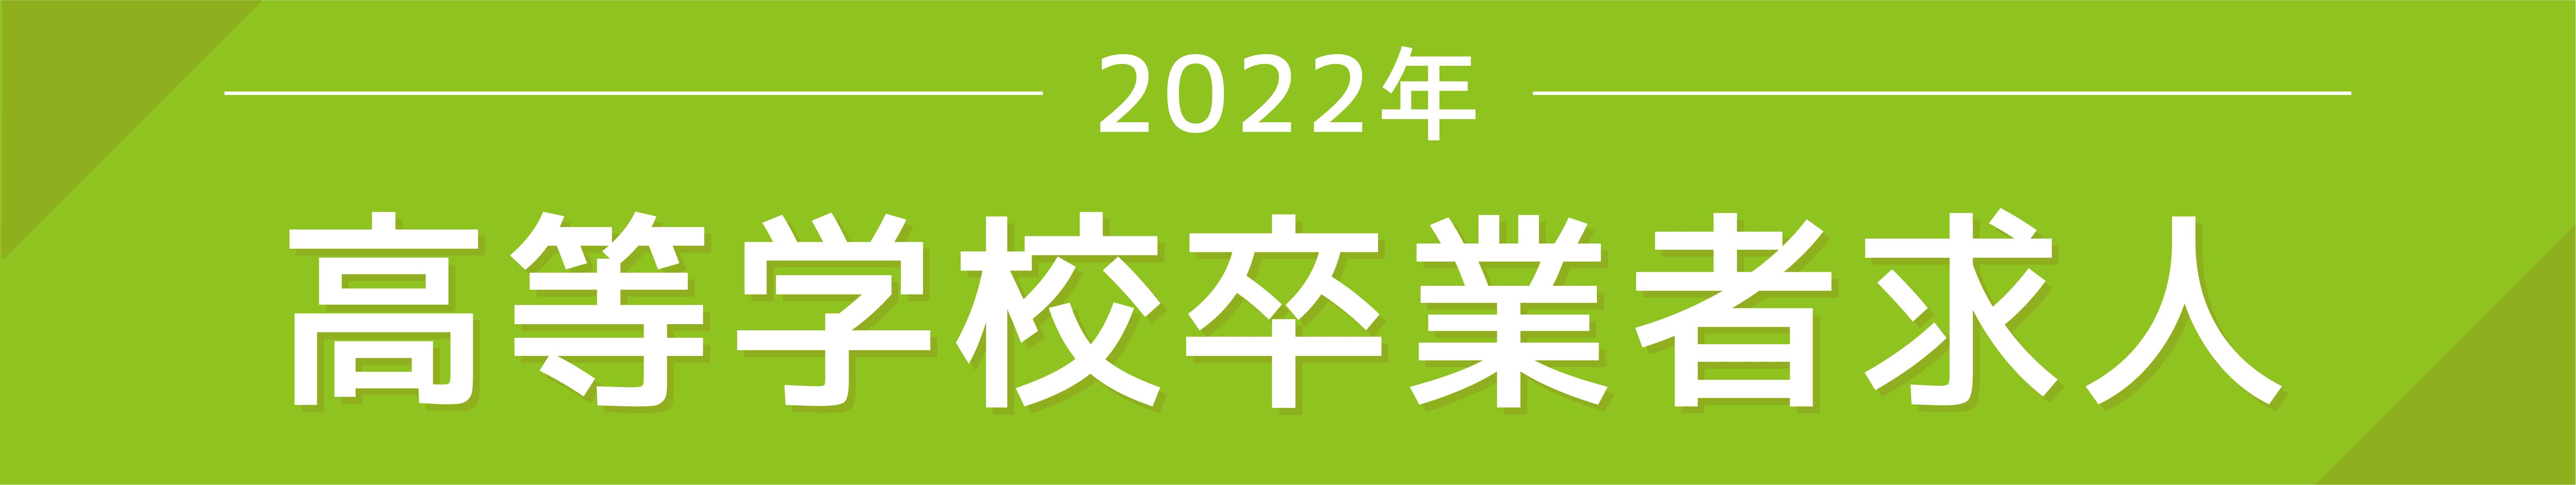 2022年度新卒採用（高卒）